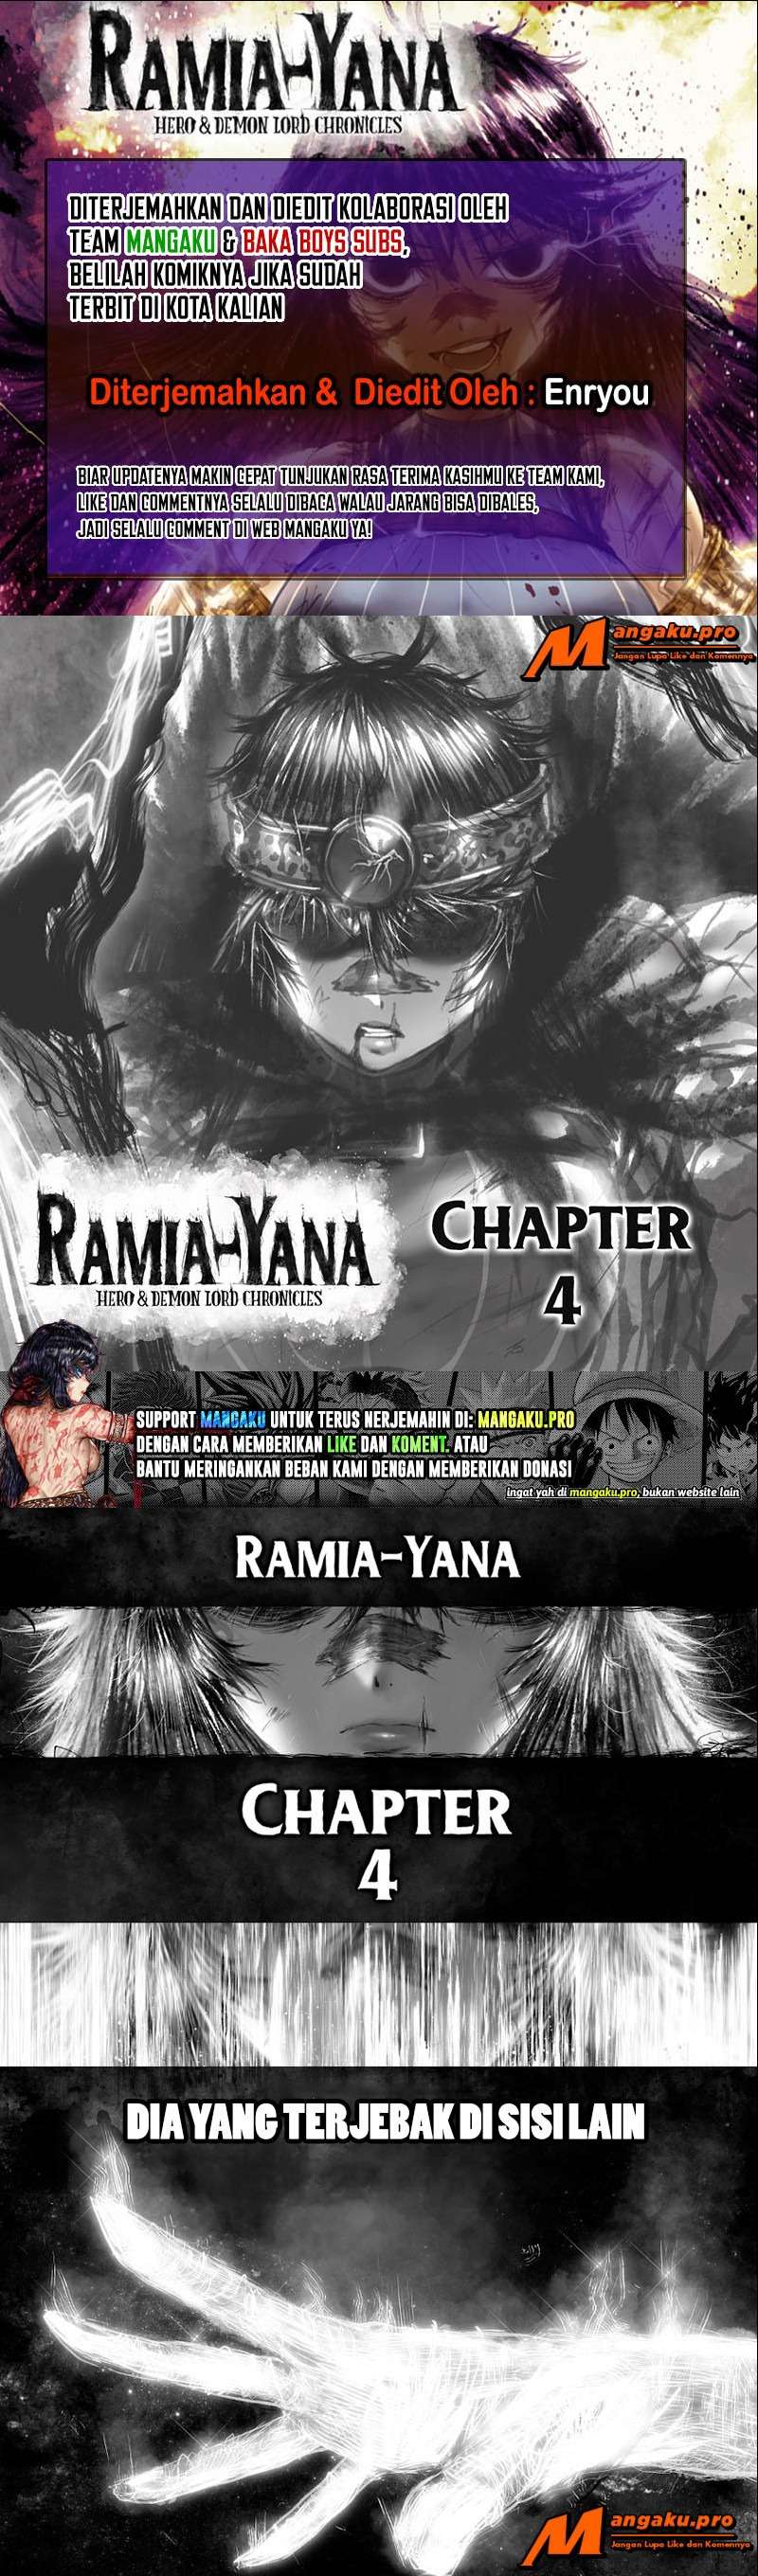 Ramia-Yana Chapter 4